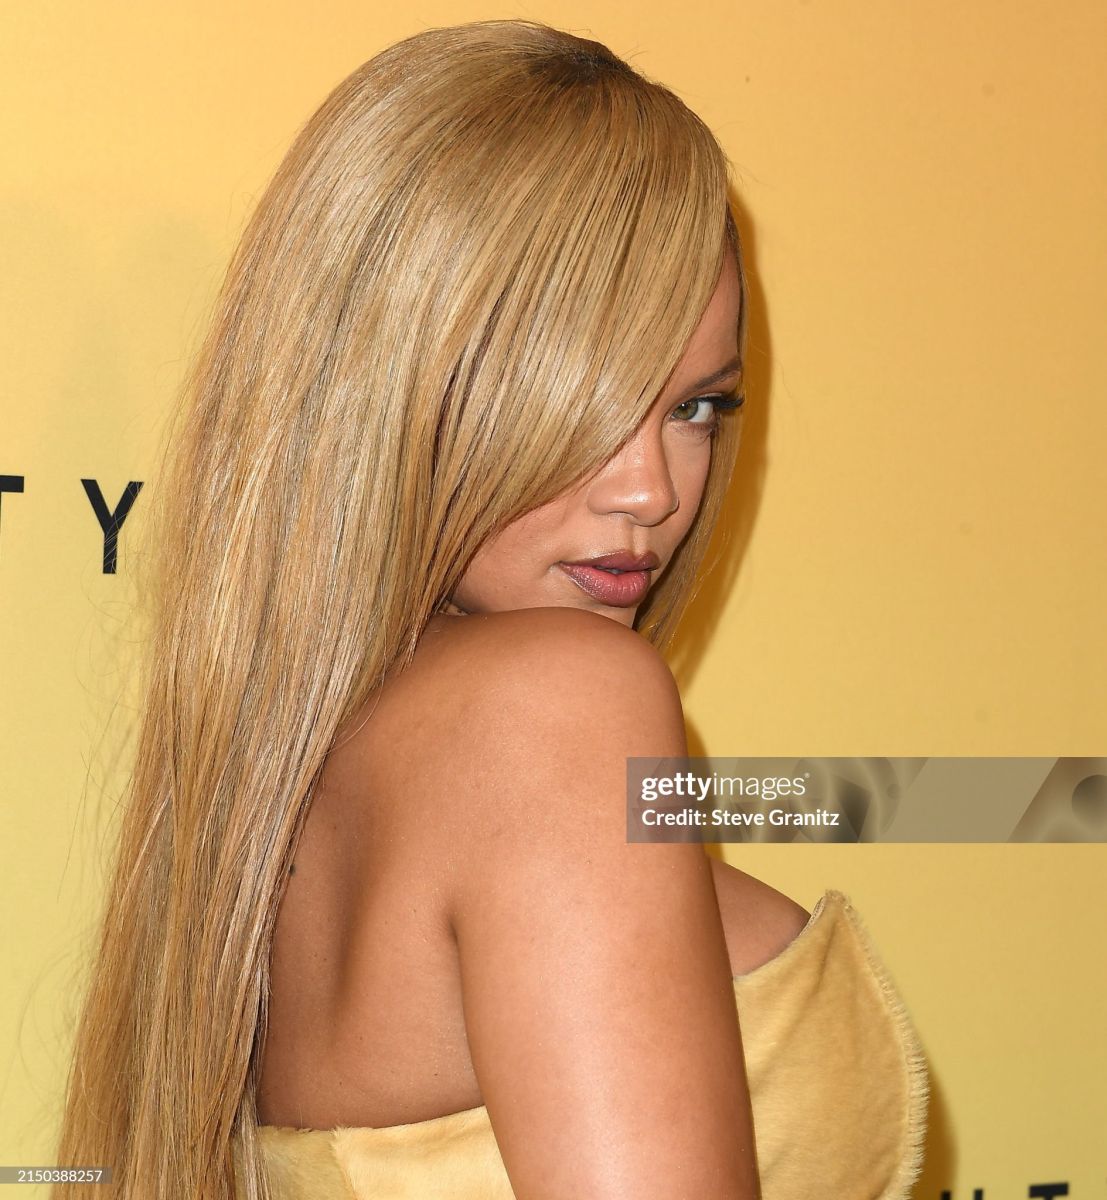 Rihanna'S Fenty Beauty Brand Illuminates With Latest Launch In Los Angeles 5